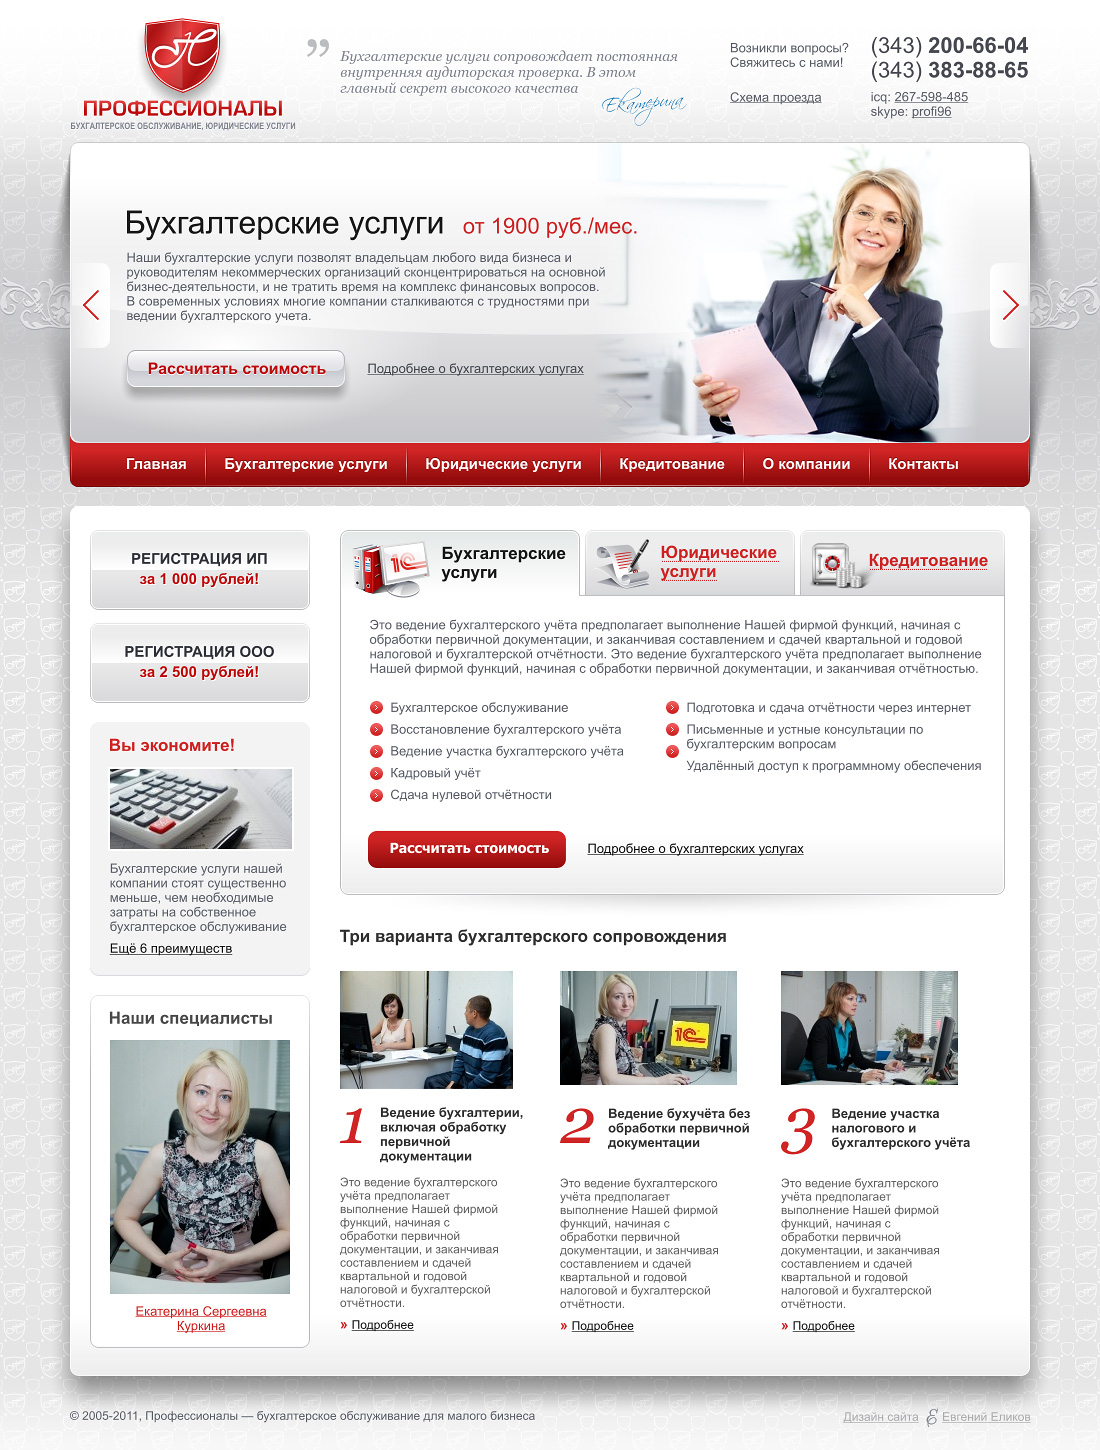 Дизайн сайта бухгалтерских услуг